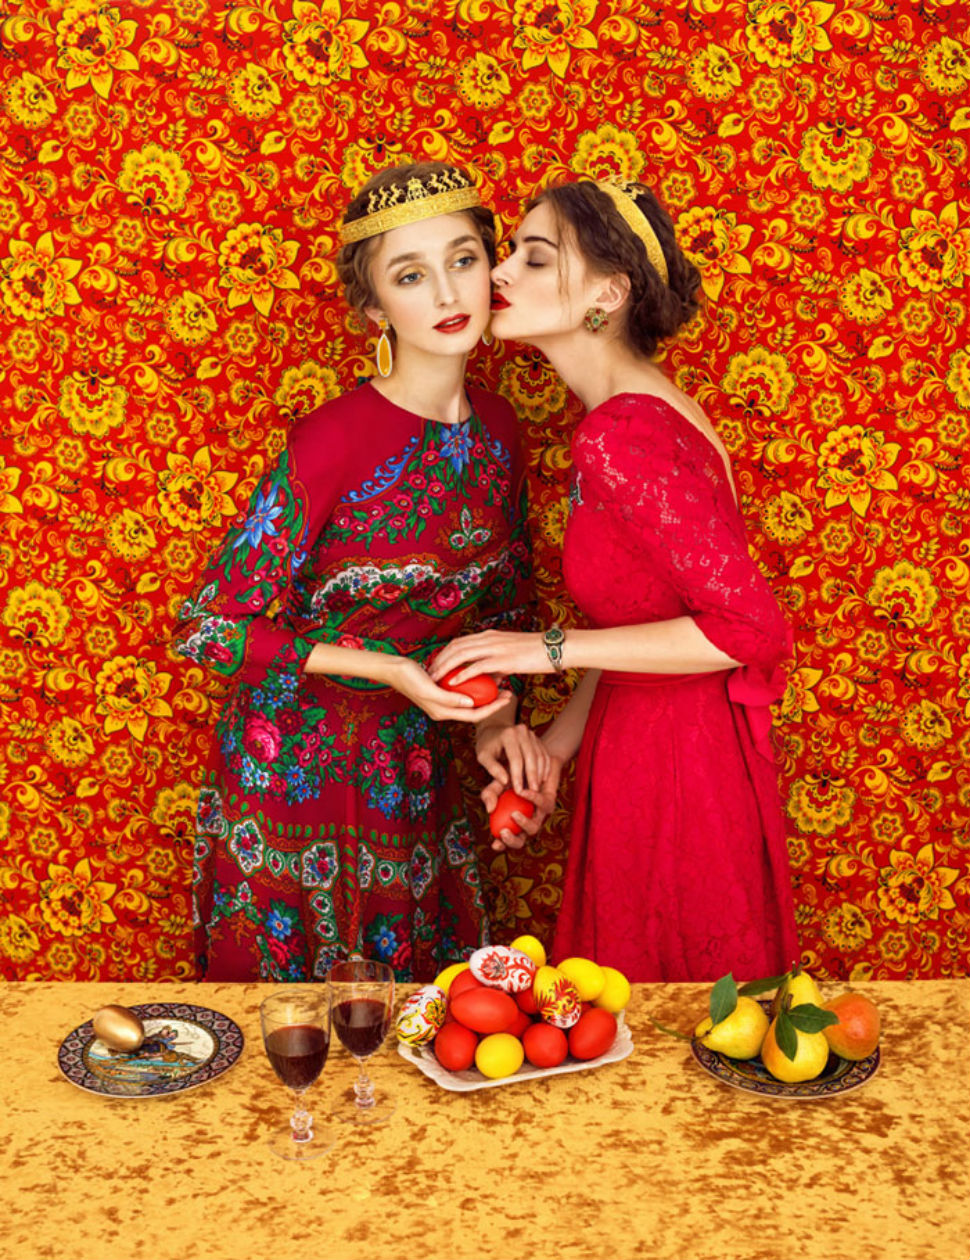 Русские красавицы в традиционных нарядах от российских фотографов